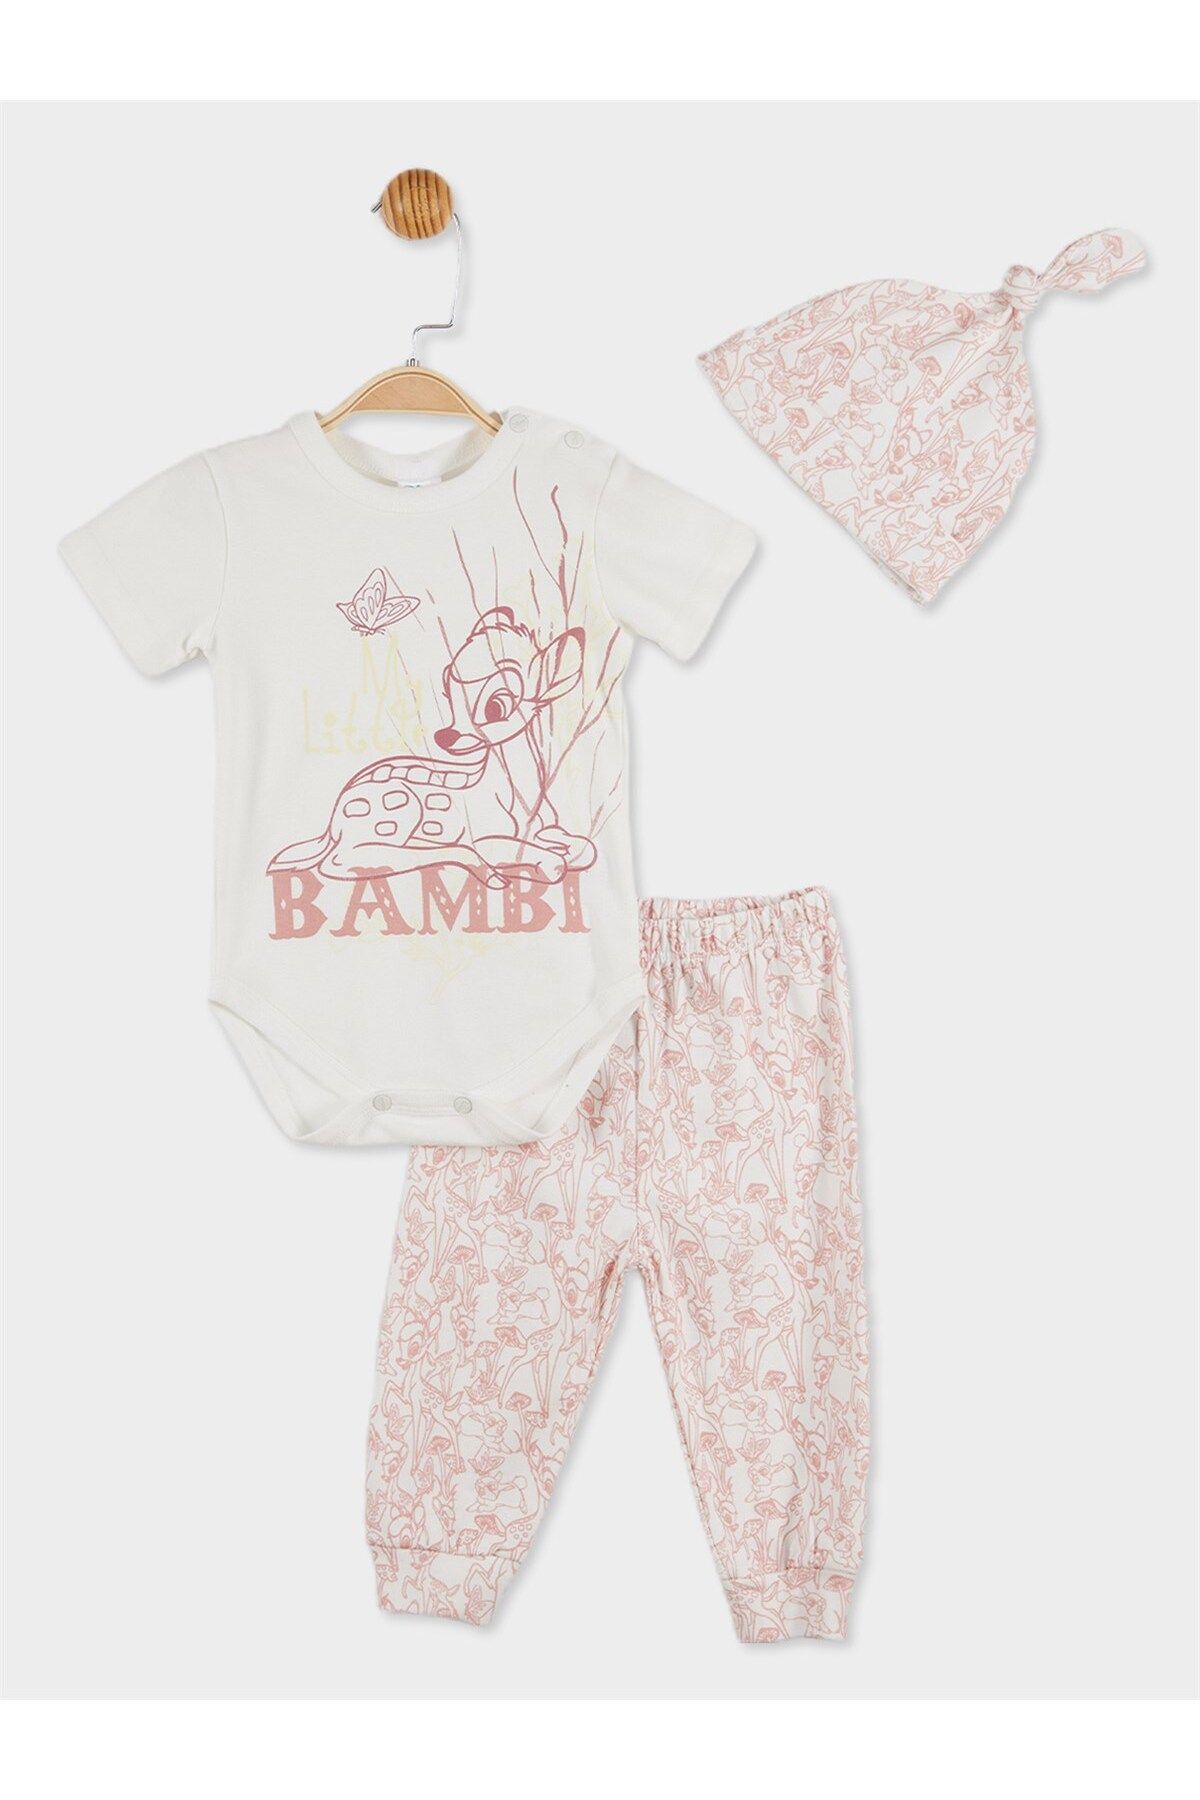 DİSNEY Bambi Lisanslı Kız Bebek Body Alt Ve Şapka 3'lü Set 20820